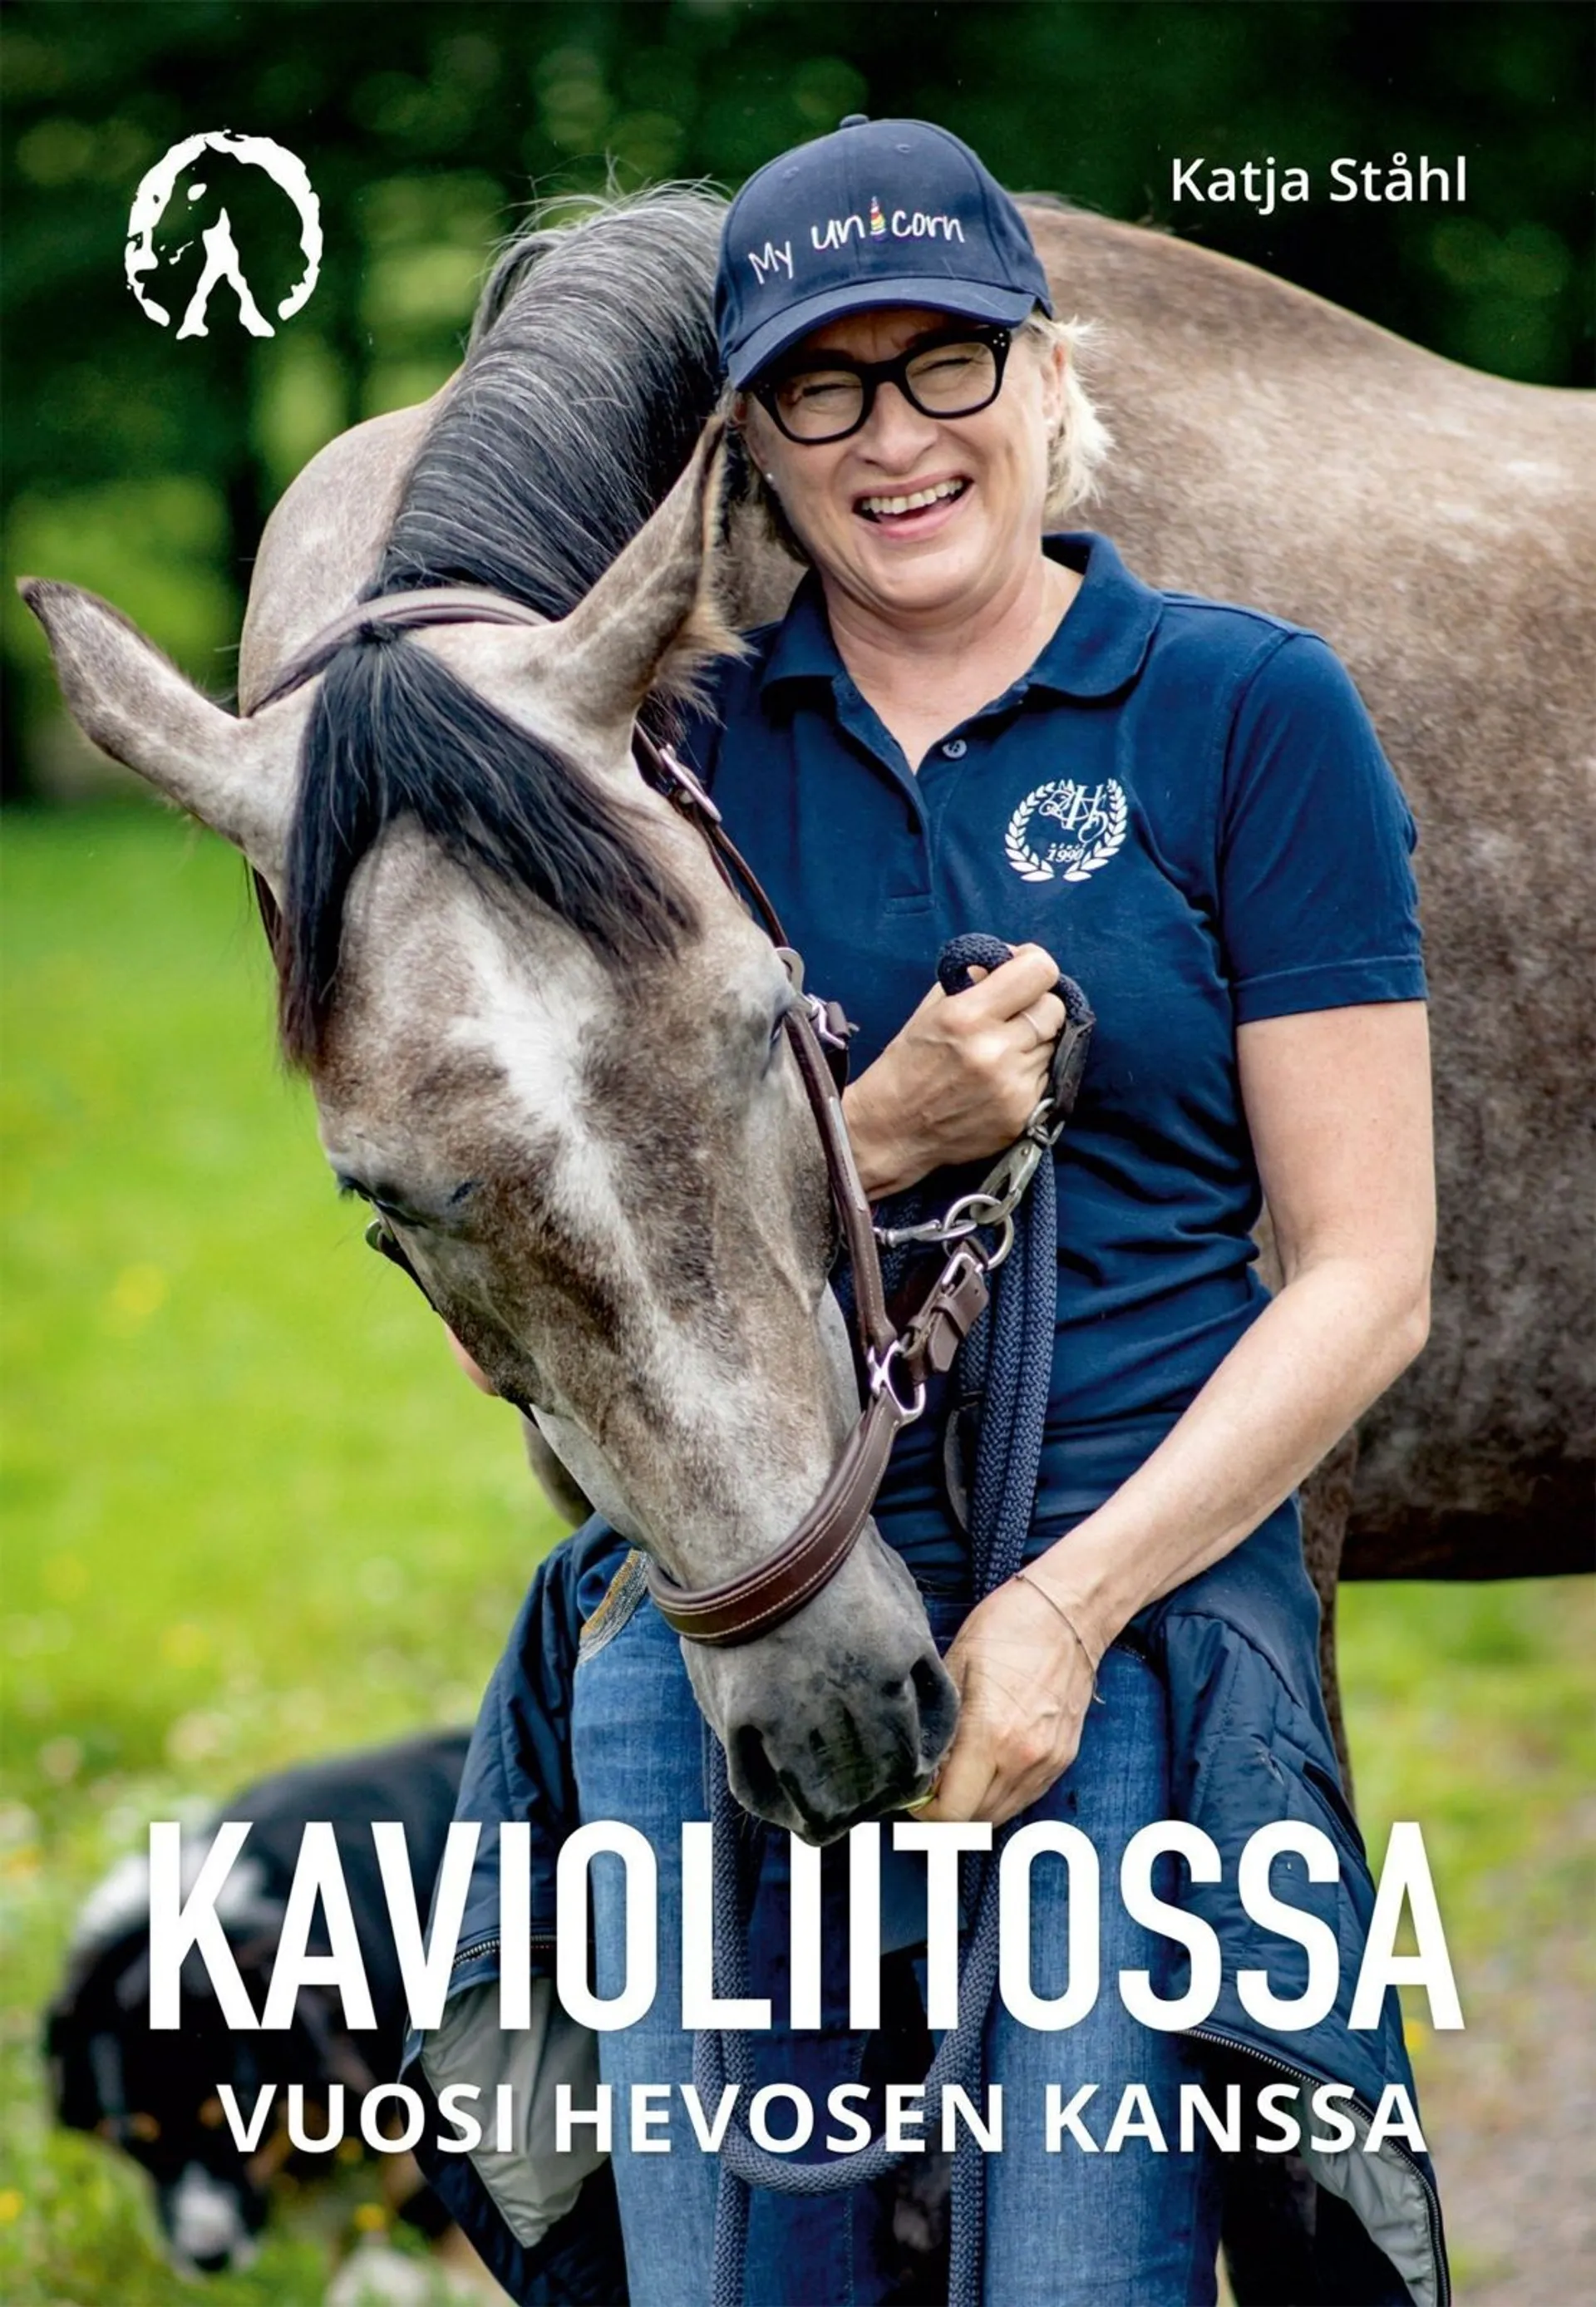 Ståhl, Kavioliitossa - Vuosi hevosen kanssa